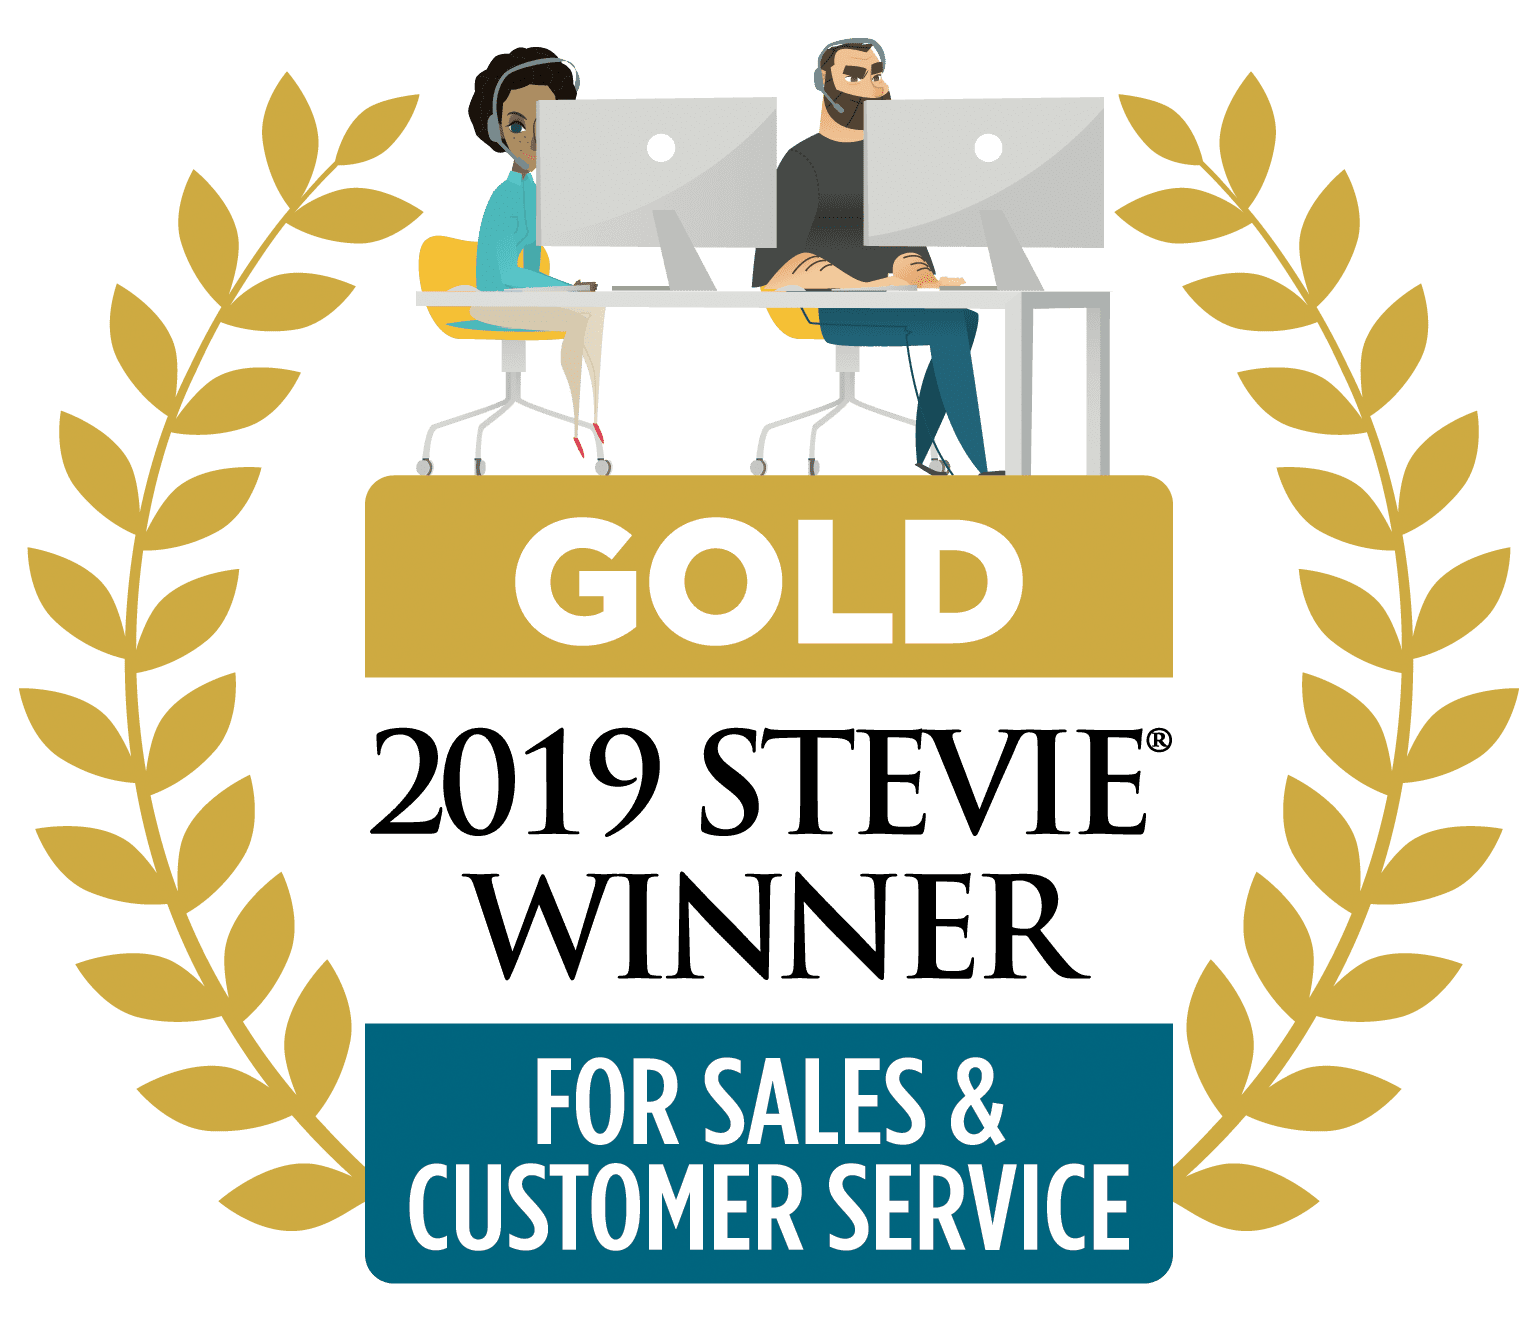 Gold 2019 Stevie Winner For Sales & Customer Service